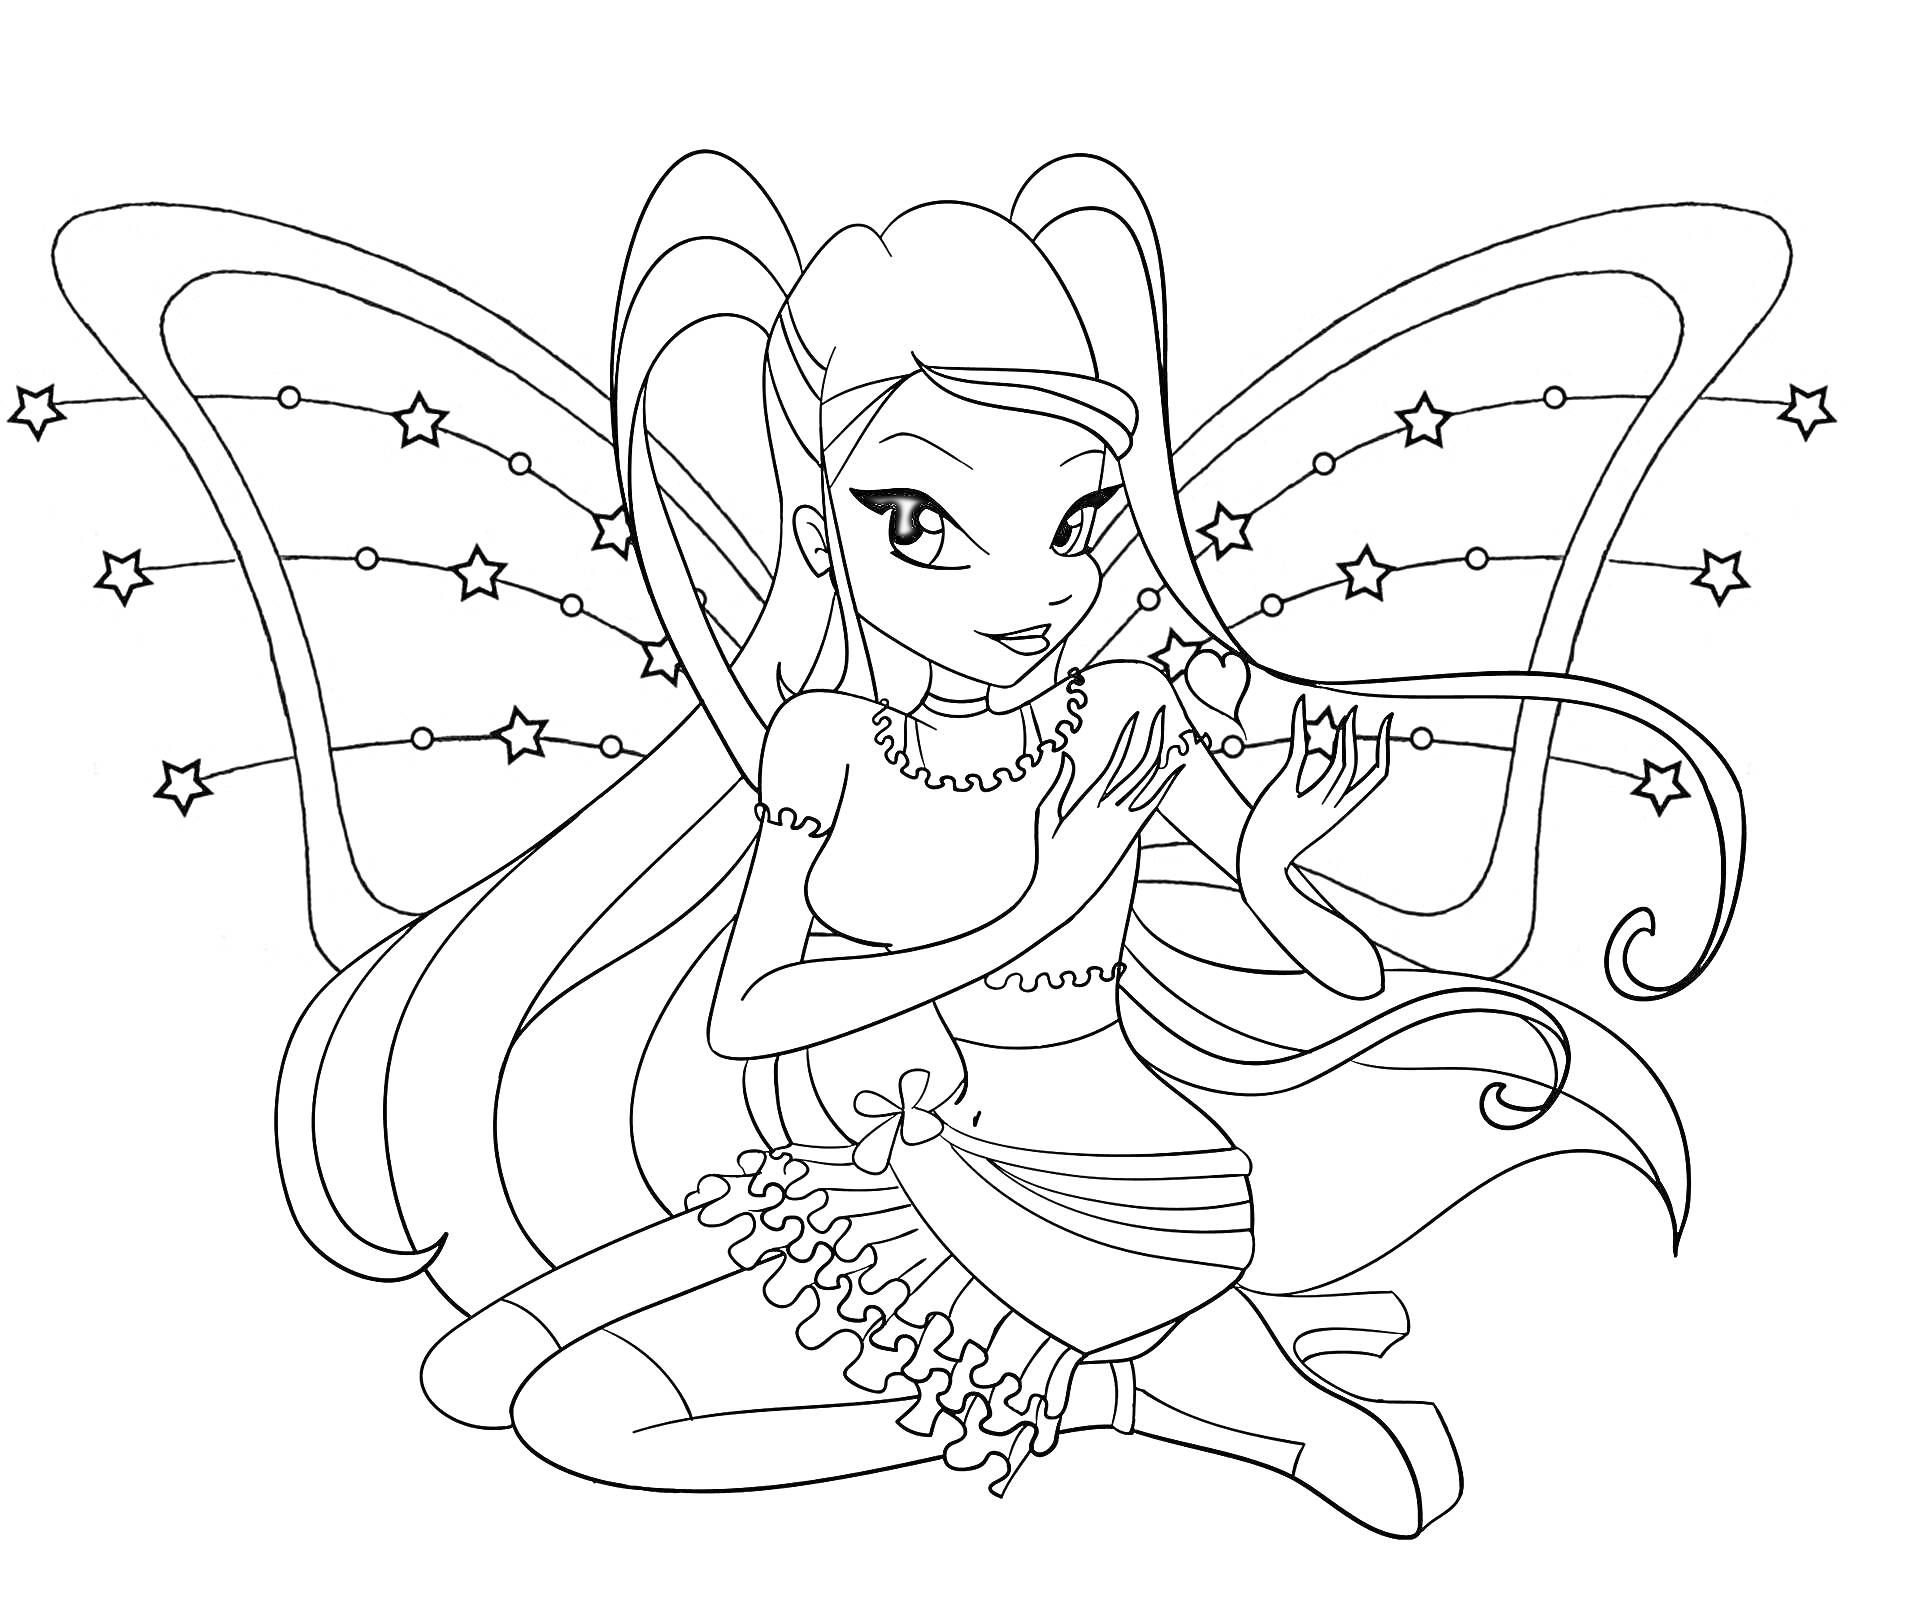 Раскраска Винкс Беливикс с длинными волосами, сидящая с крыльями, украшенными звездами